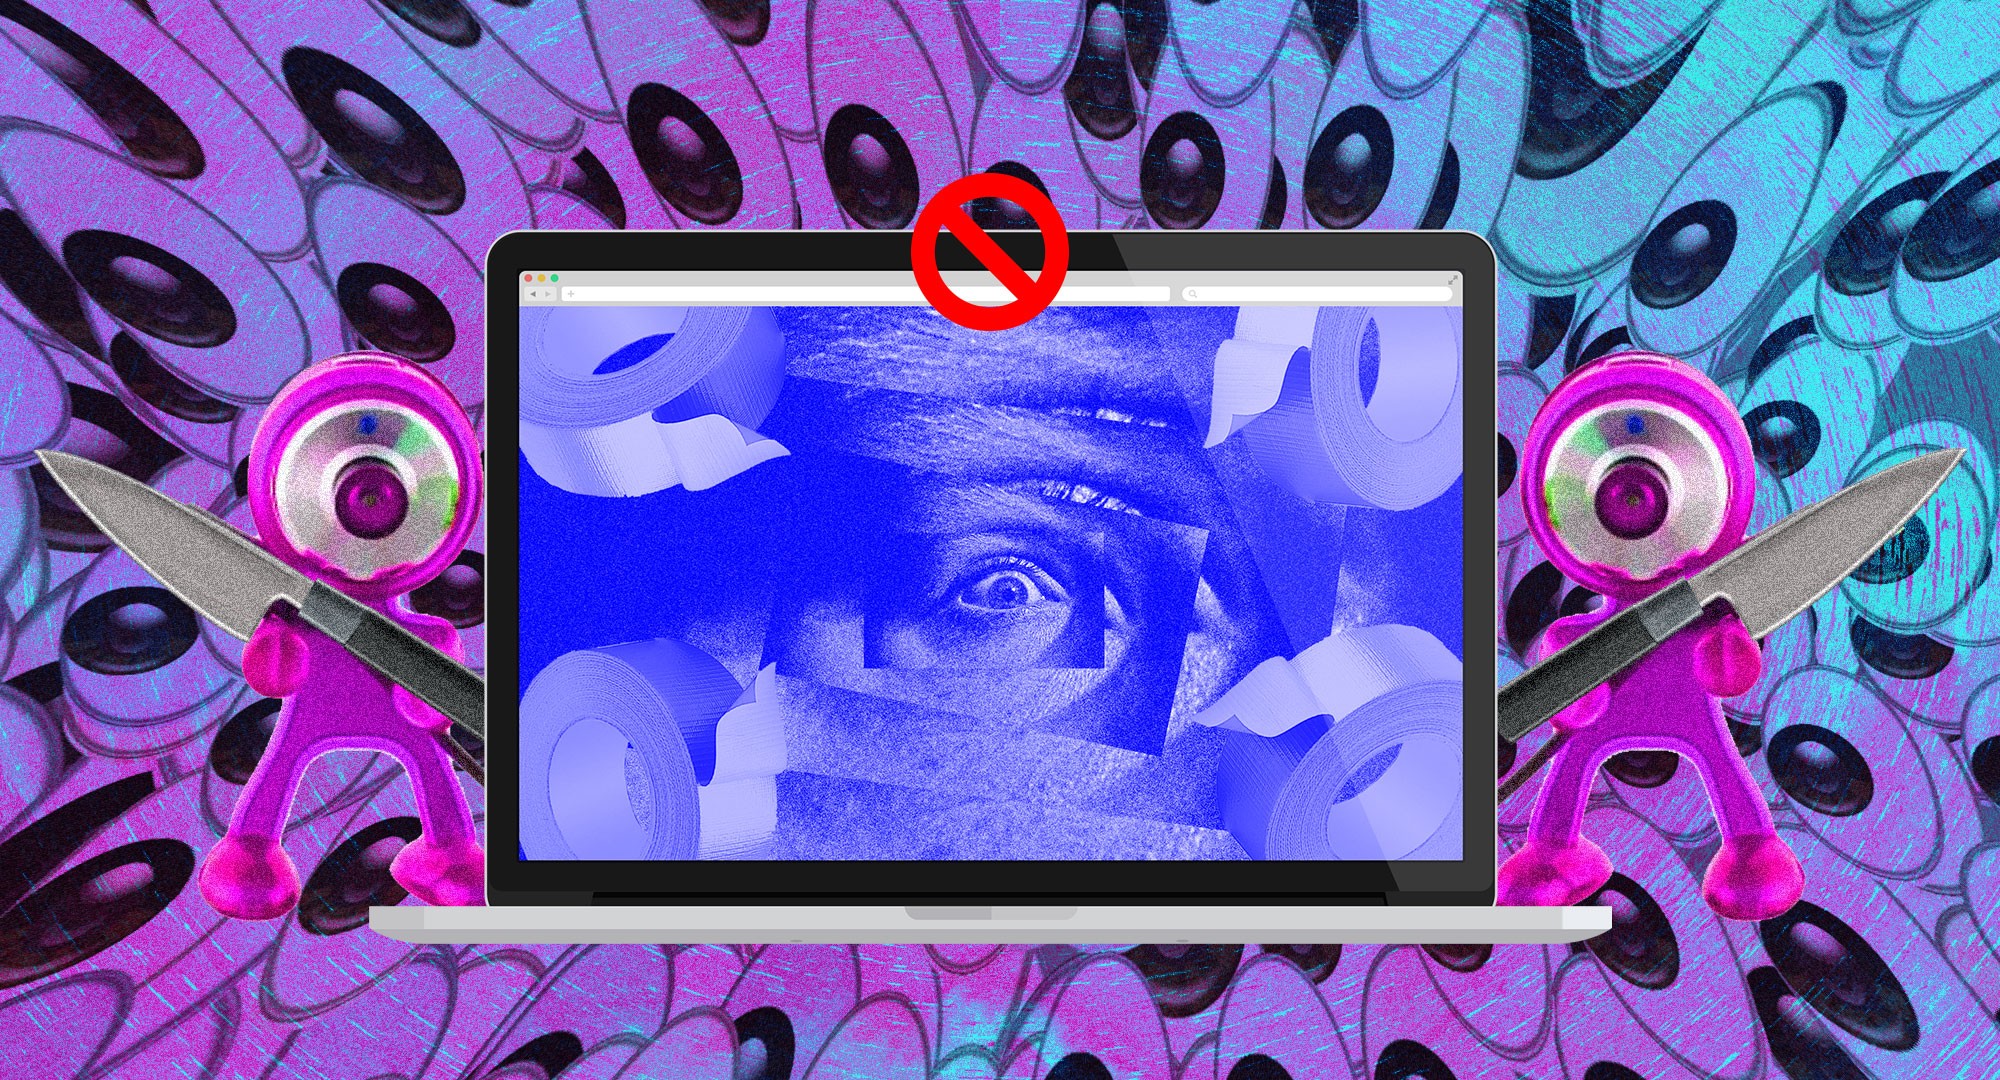 Tapar o no tapar la webcam: ésa es la cuestión